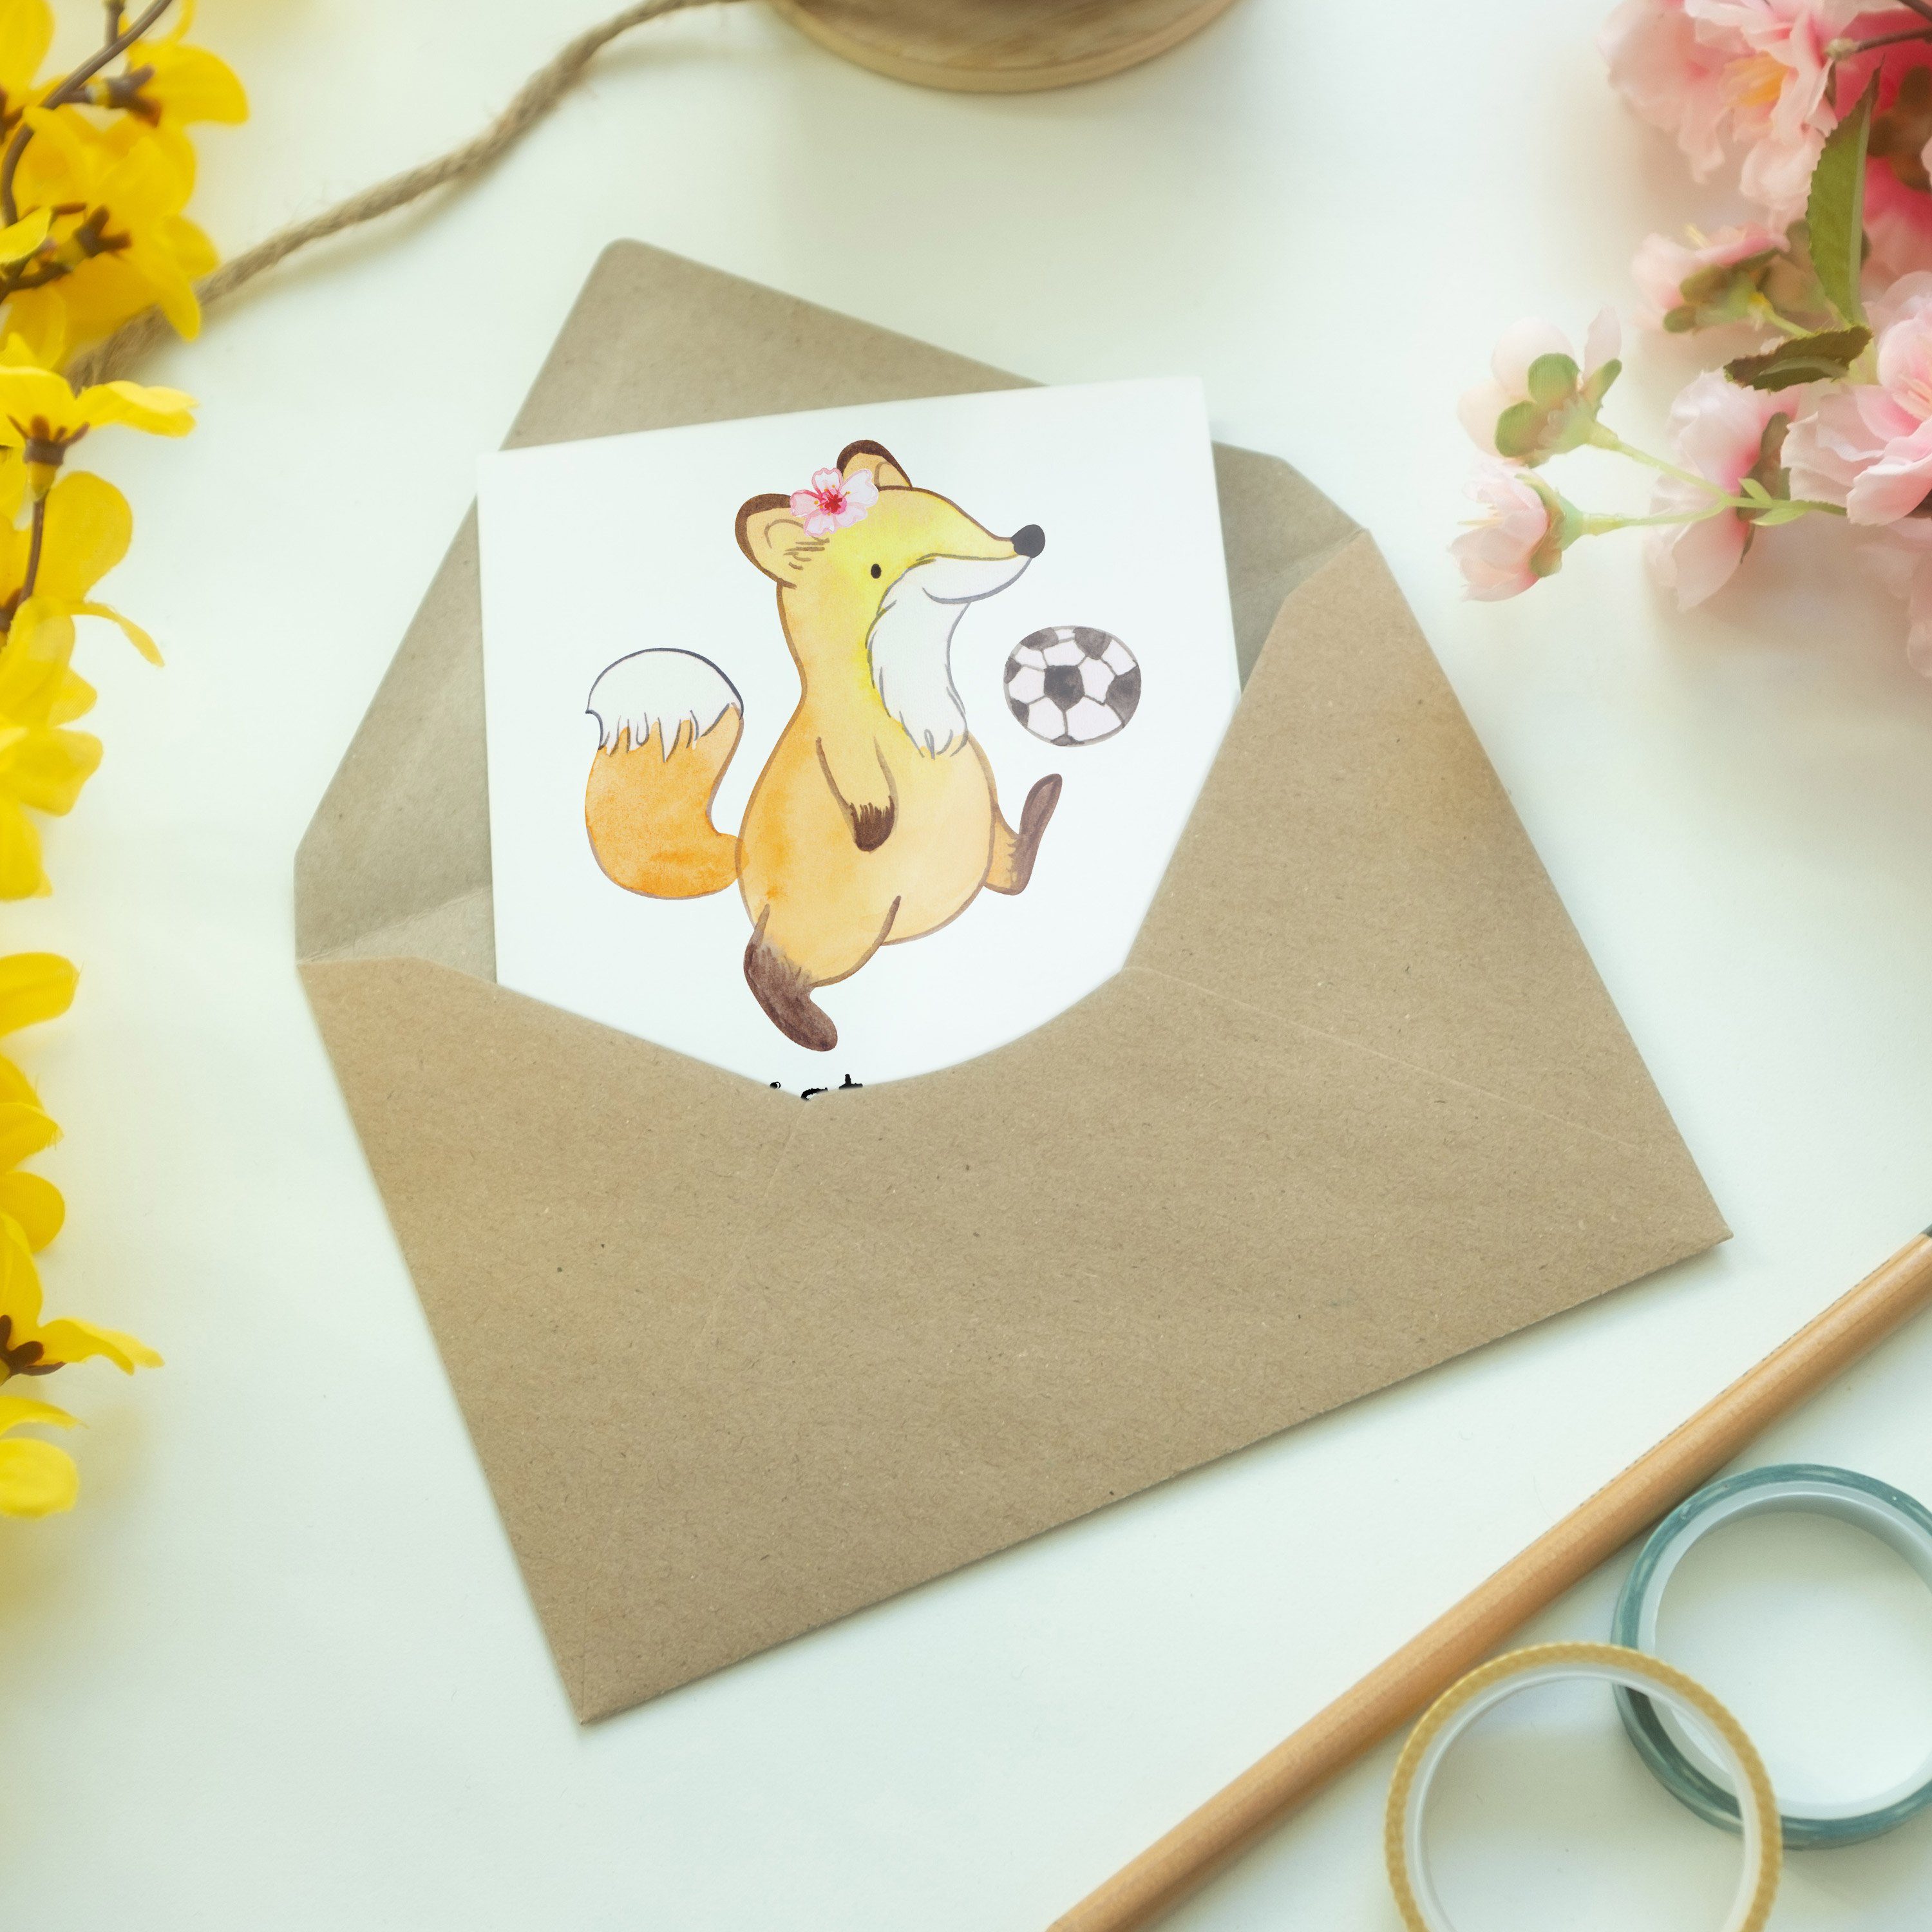 Mr. & Mrs. Panda Fußballtrainerin mit Fußball, Herz - Verein - Fußballs Weiß Grußkarte Geschenk